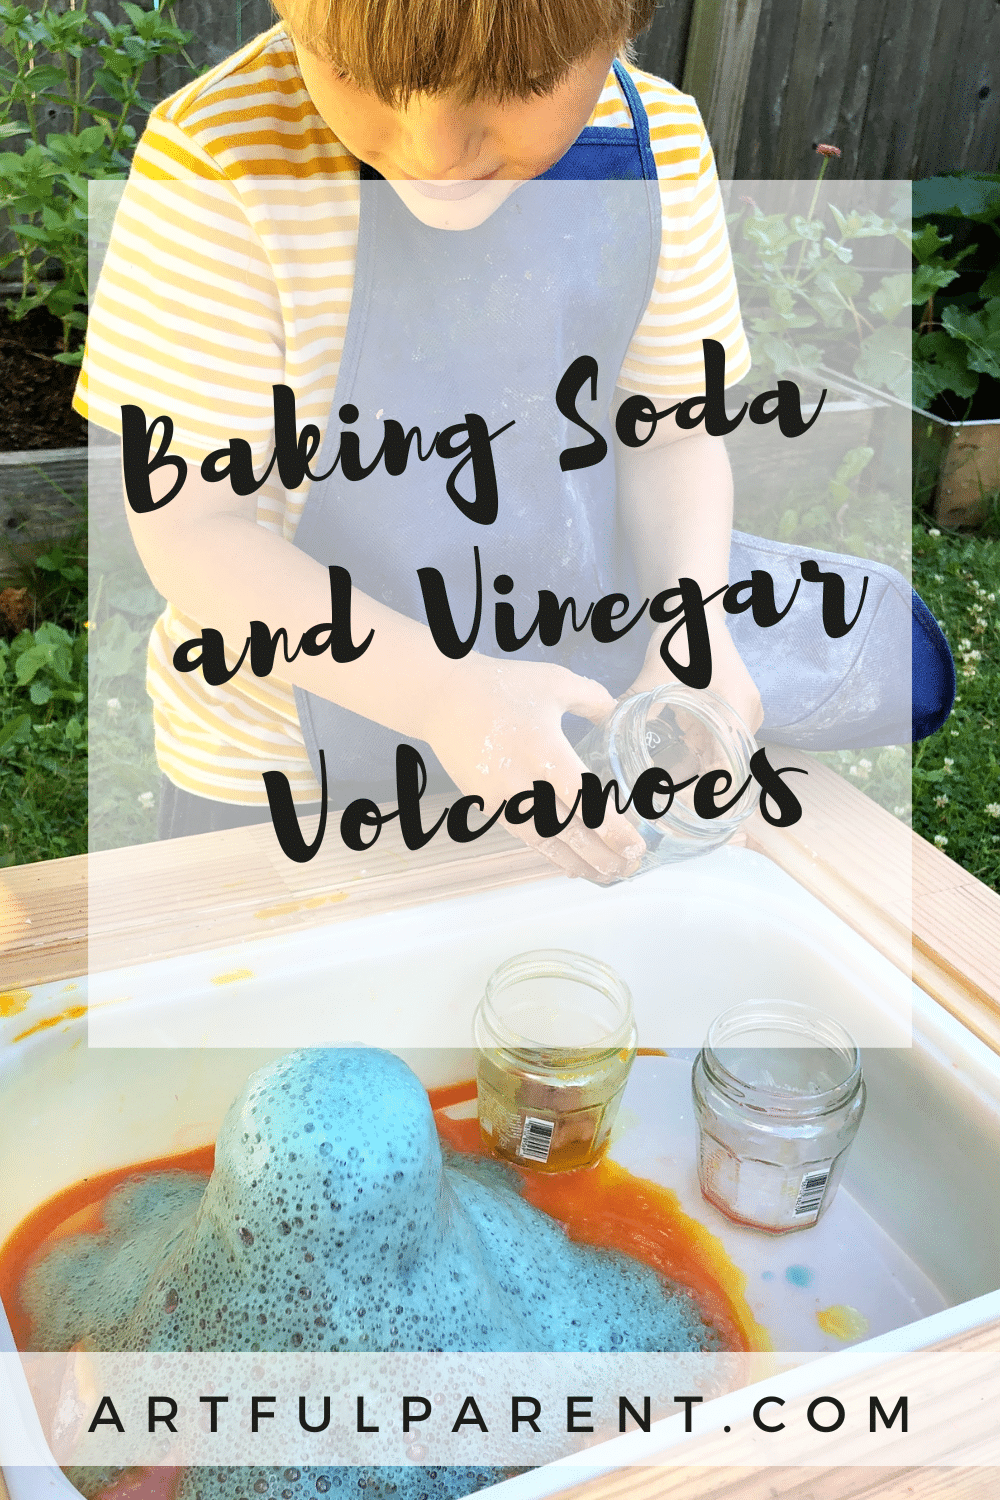 How To Make Baking Soda and Vinegar Volcanoes